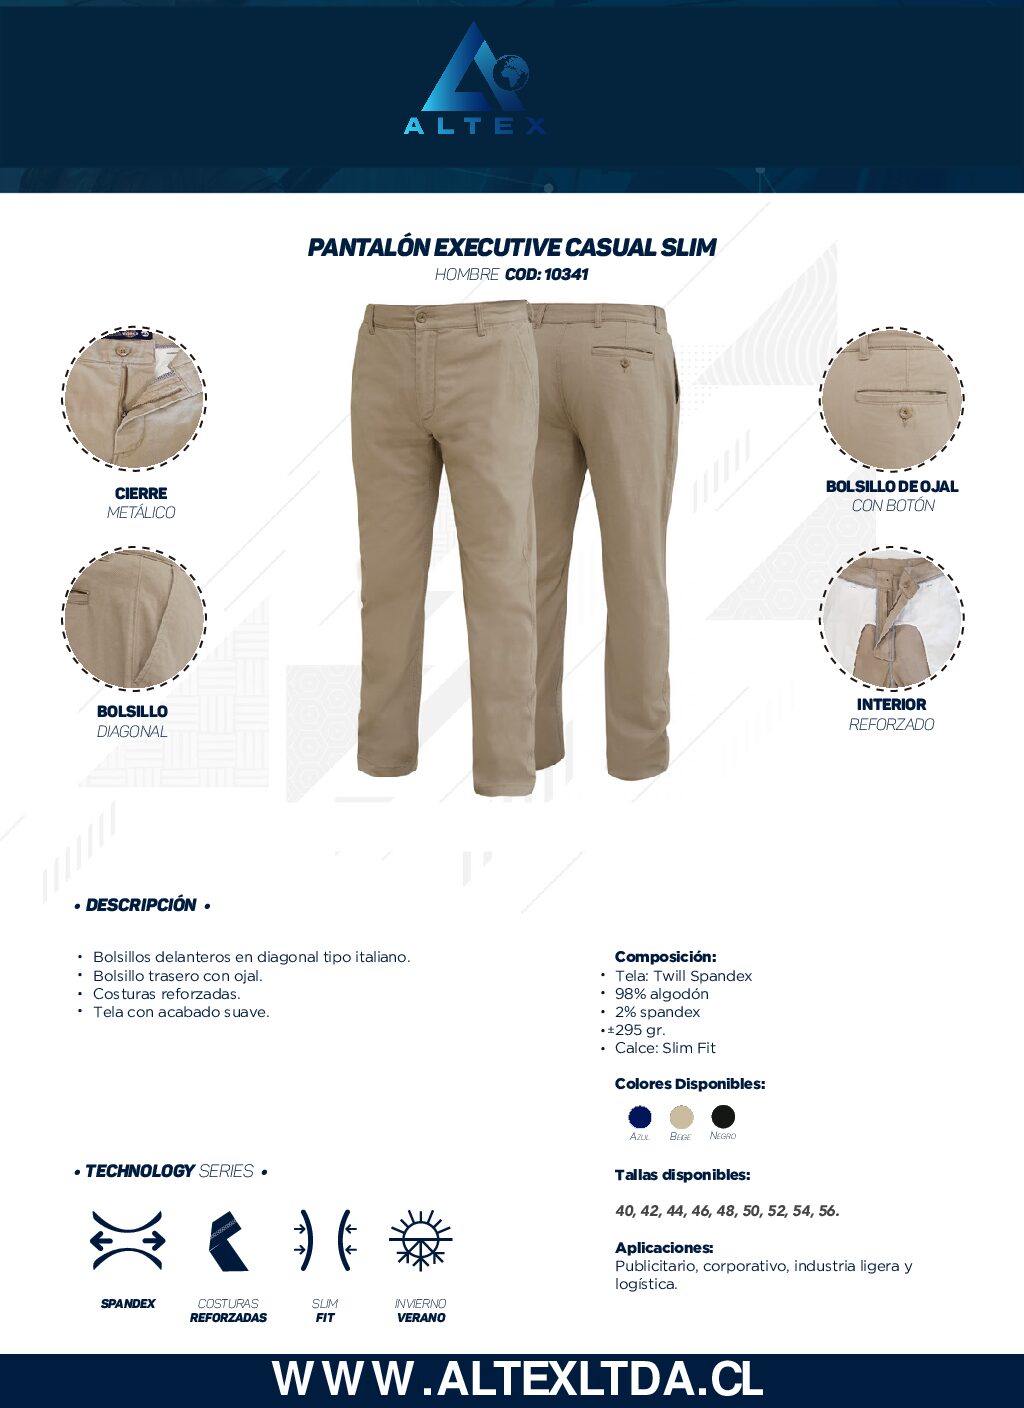 Pantalón Casual De Tela (Spandex) Para Hombre